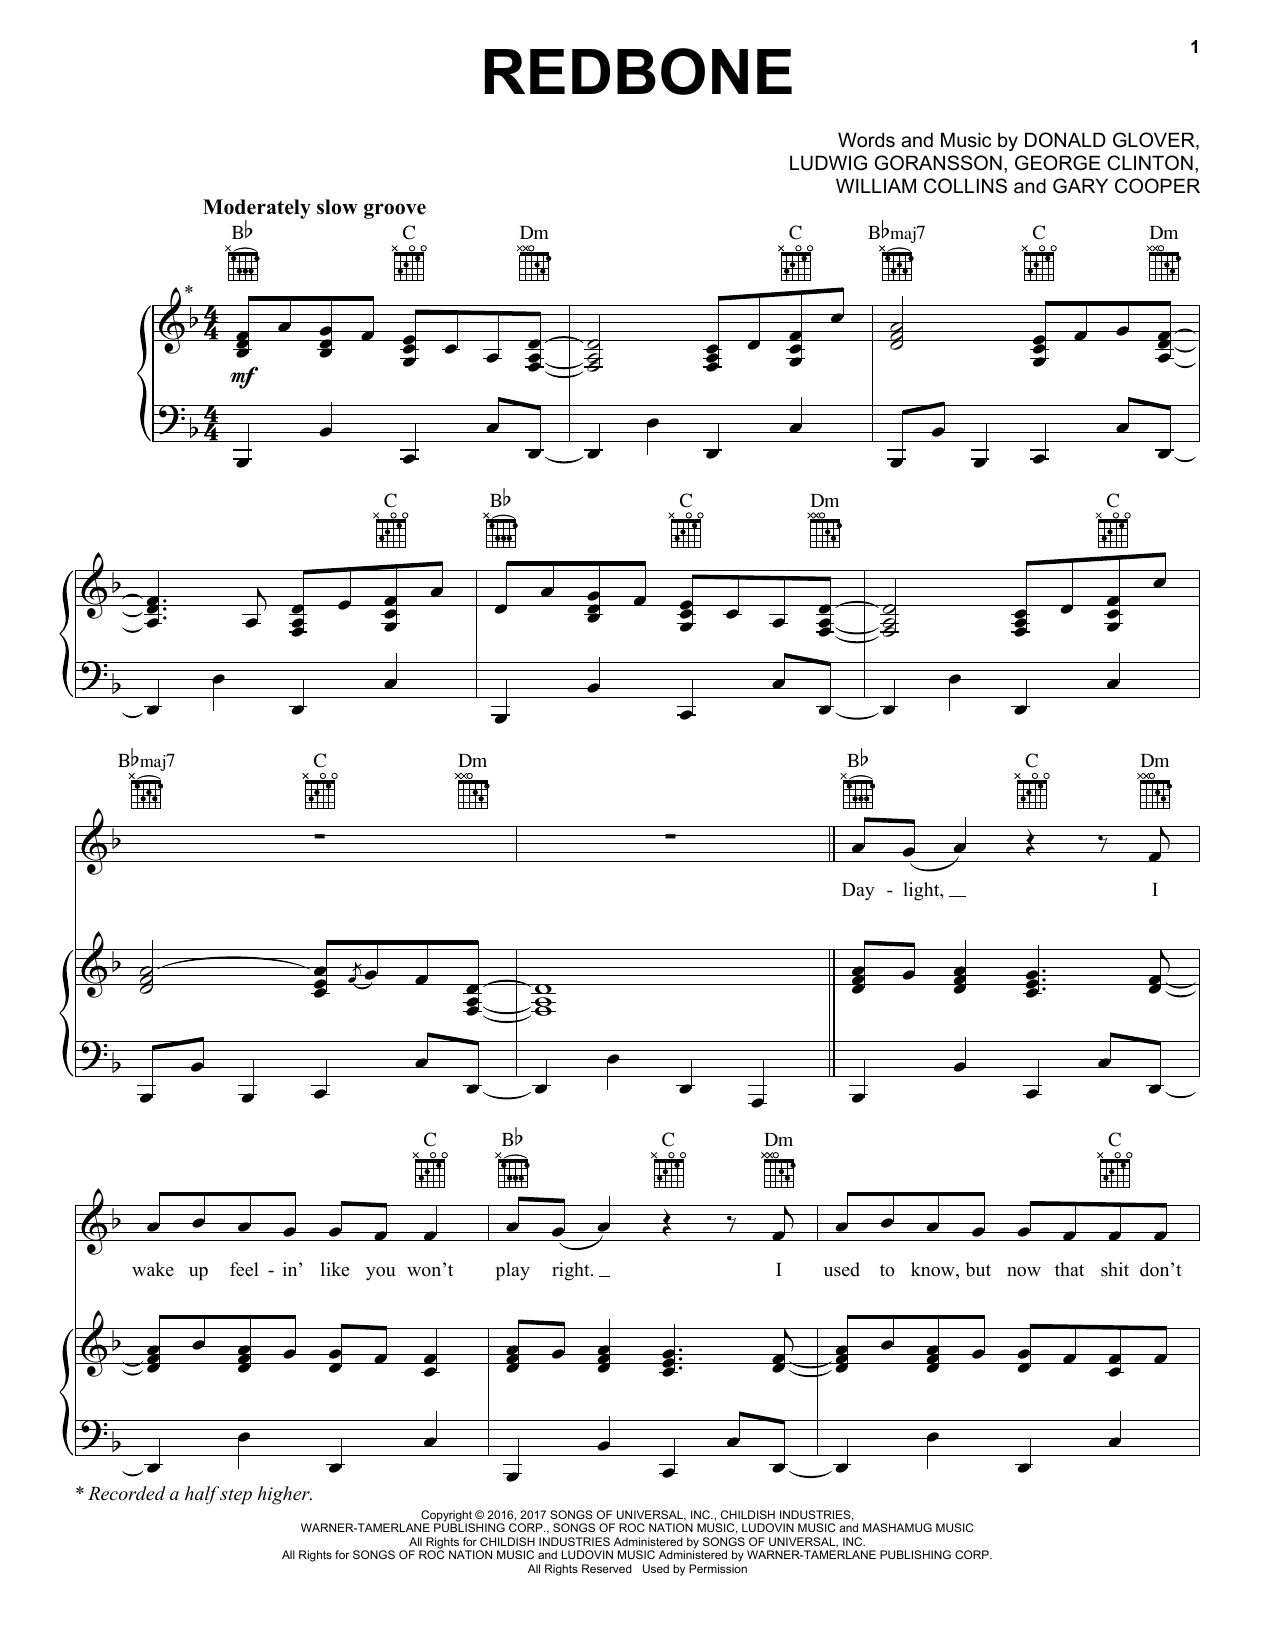 Childish Gambino Redbone Sheet Music Notes & Chords for Ukulele - Download or Print PDF